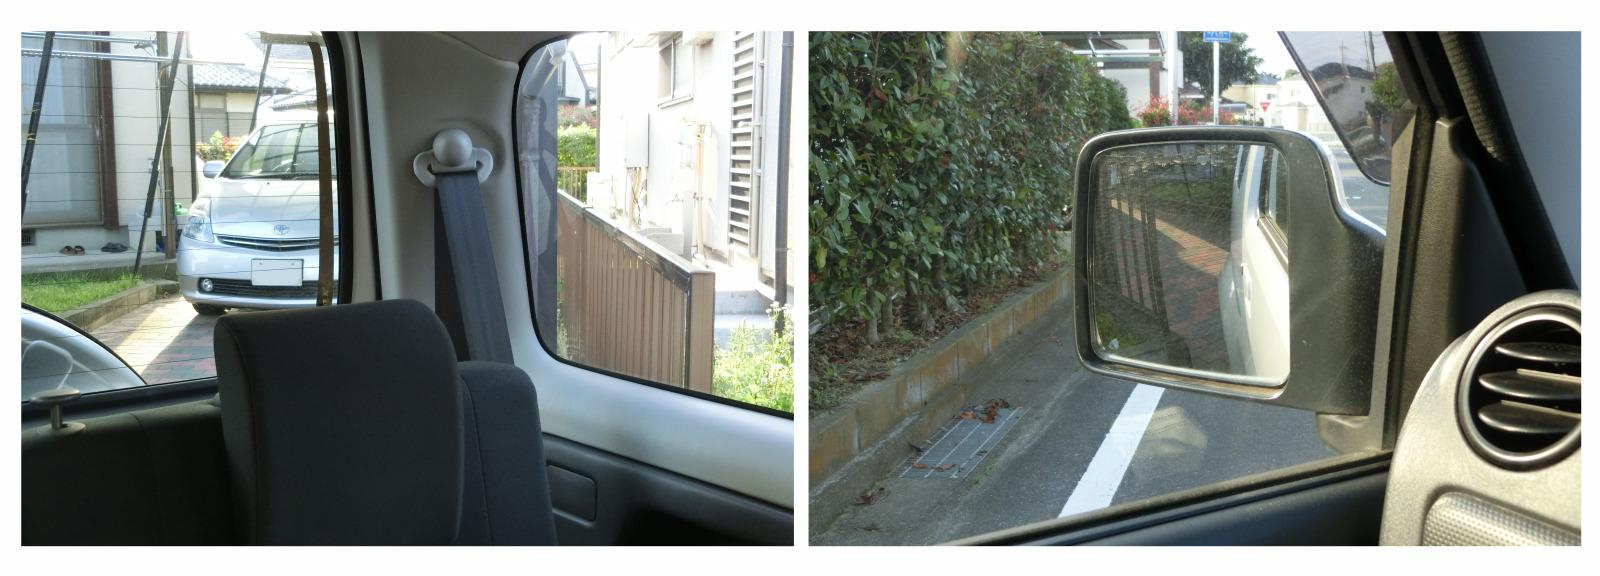 Block 画像 バック駐車 車庫入れで簡単にまっすぐスマートに決めるコツは目線とハンドル操作 Clicccar Com